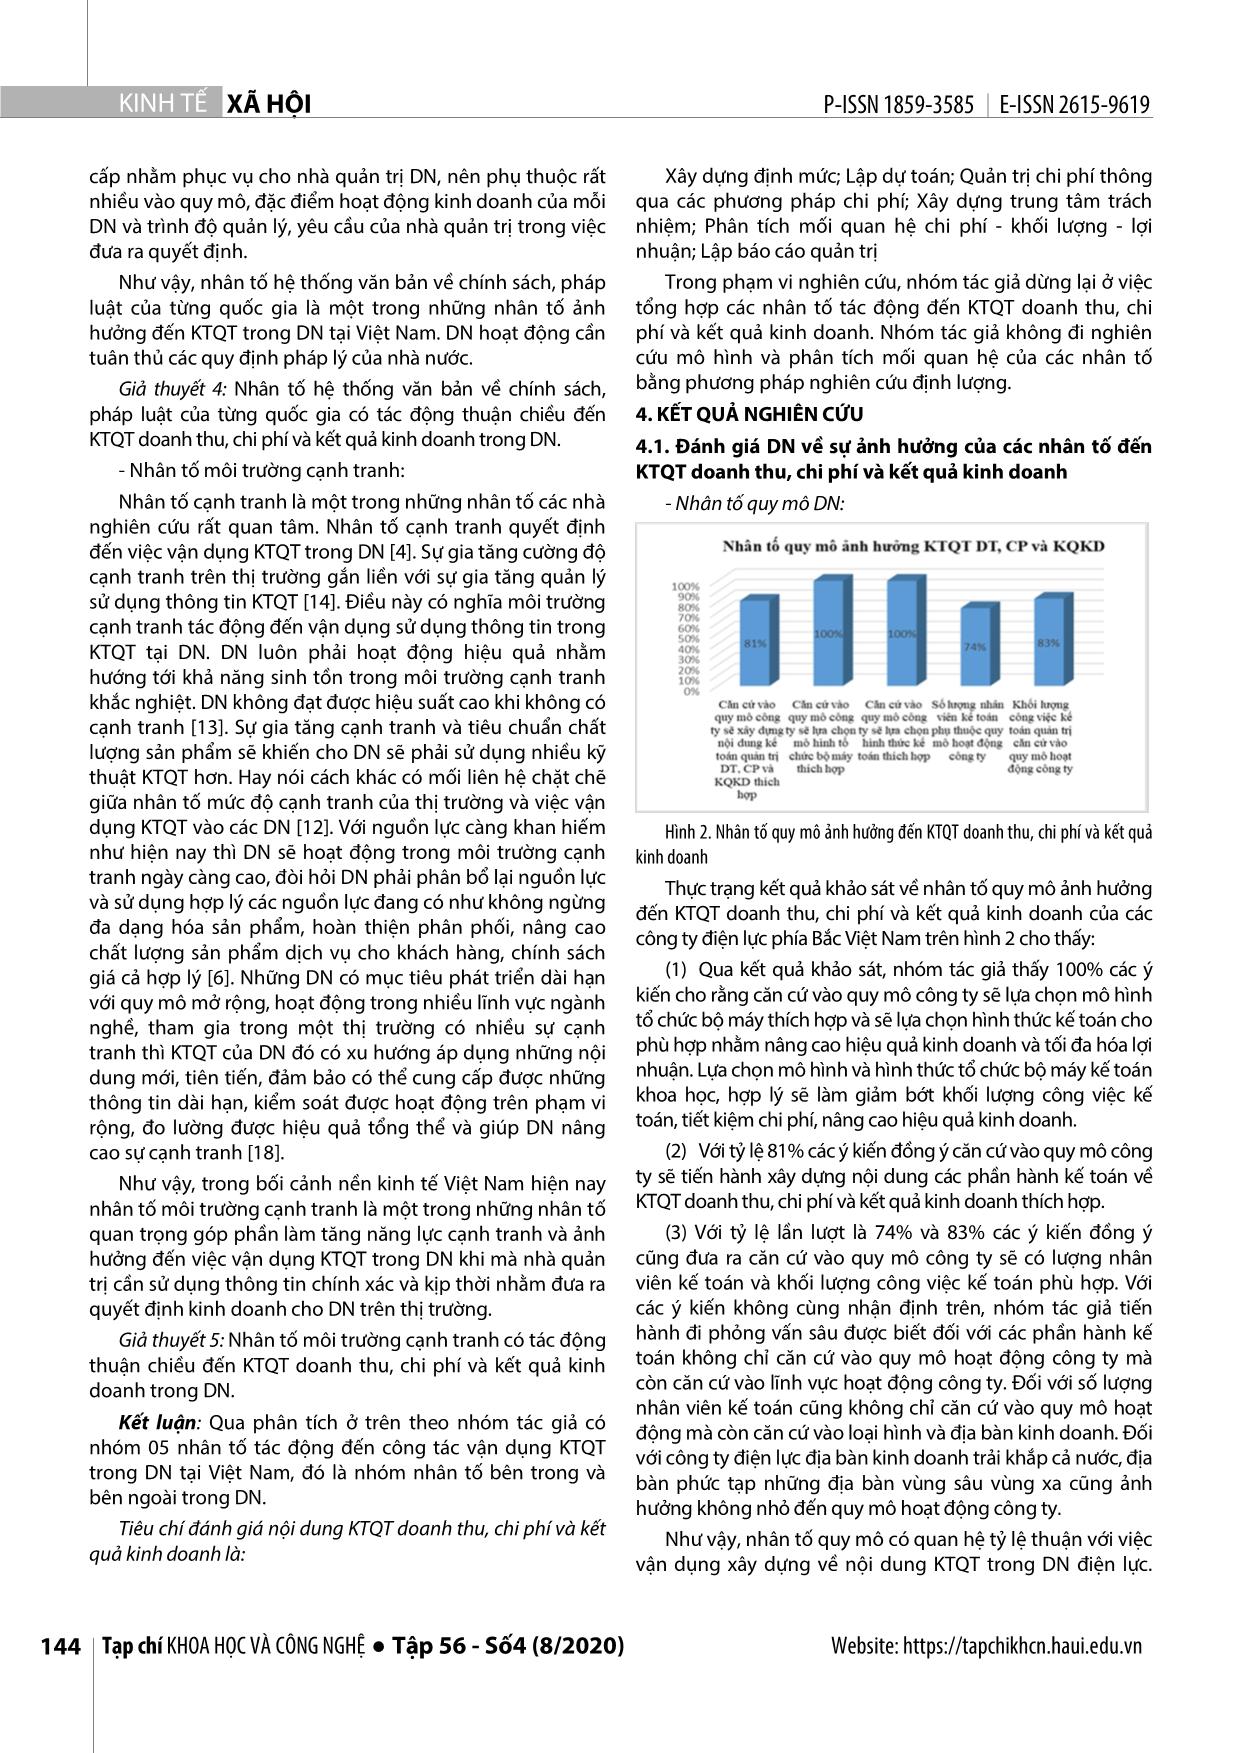 Nghiên cứu các nhân tố ảnh hưởng tới kế toán quản trị doanh thu, chi phí và kết quả kinh doanh tại các doanh nghiệp điện phía Bắc Việt Nam bằng phương pháp định tính trang 6